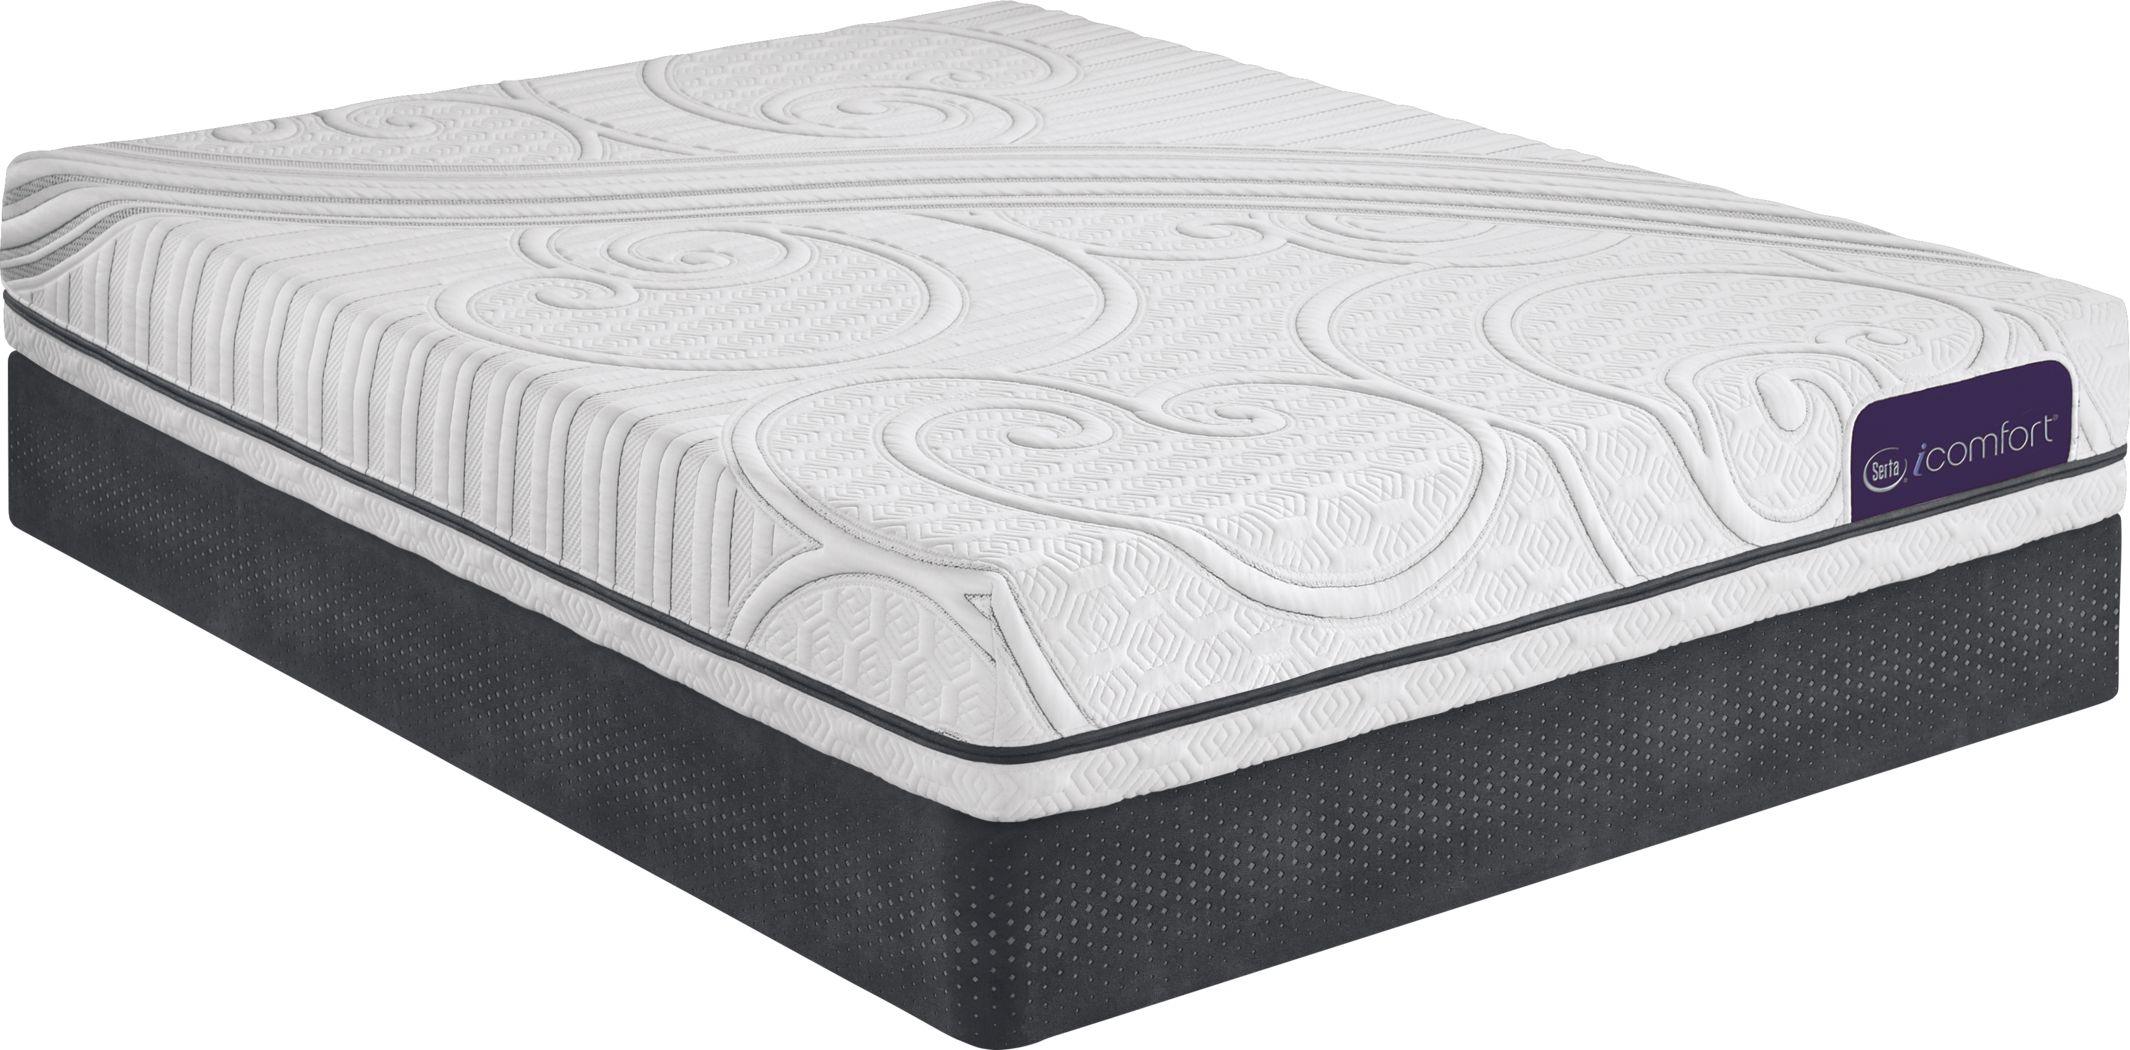 icomfort temptouch queen mattress firm